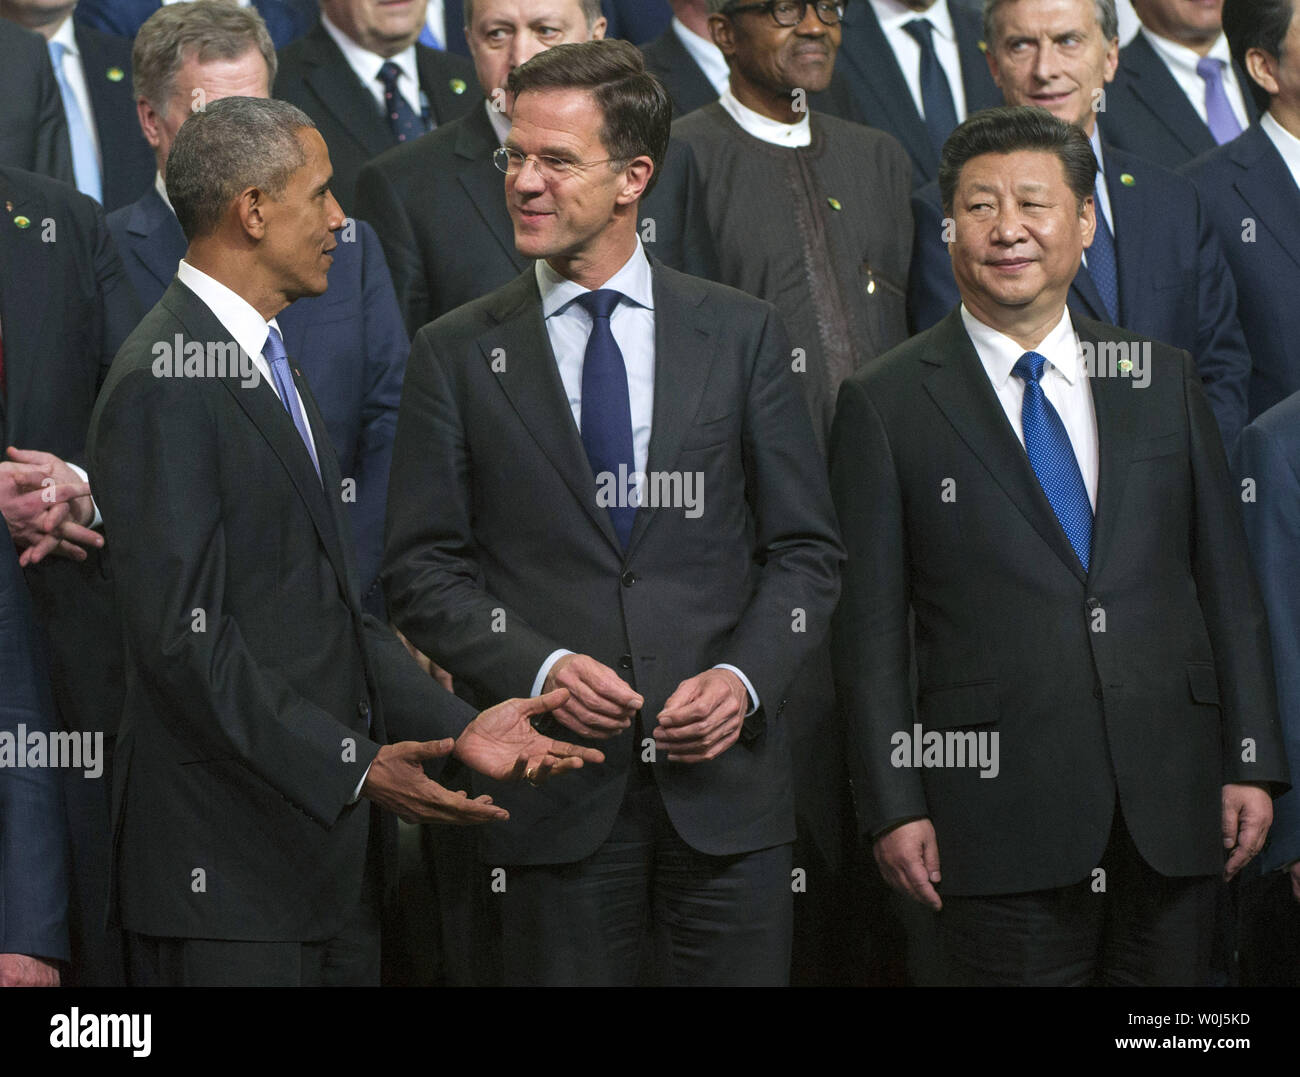 Le président Barack Obama parle avec Mark Rutte (R), Premier Ministre des Pays-Bas, que le président chinois Xi Jinping montres, lors d'une photo de famille à la 2016 Sommet sur la sécurité nucléaire à Washington, D.C. le 1 avril 2016. Le Sommet réunit les dirigeants du monde entier pour aider à apporter des améliorations à la sécurité des matières nucléaires dans le monde entier. Photo par Kevin Dietsch/UPI Banque D'Images